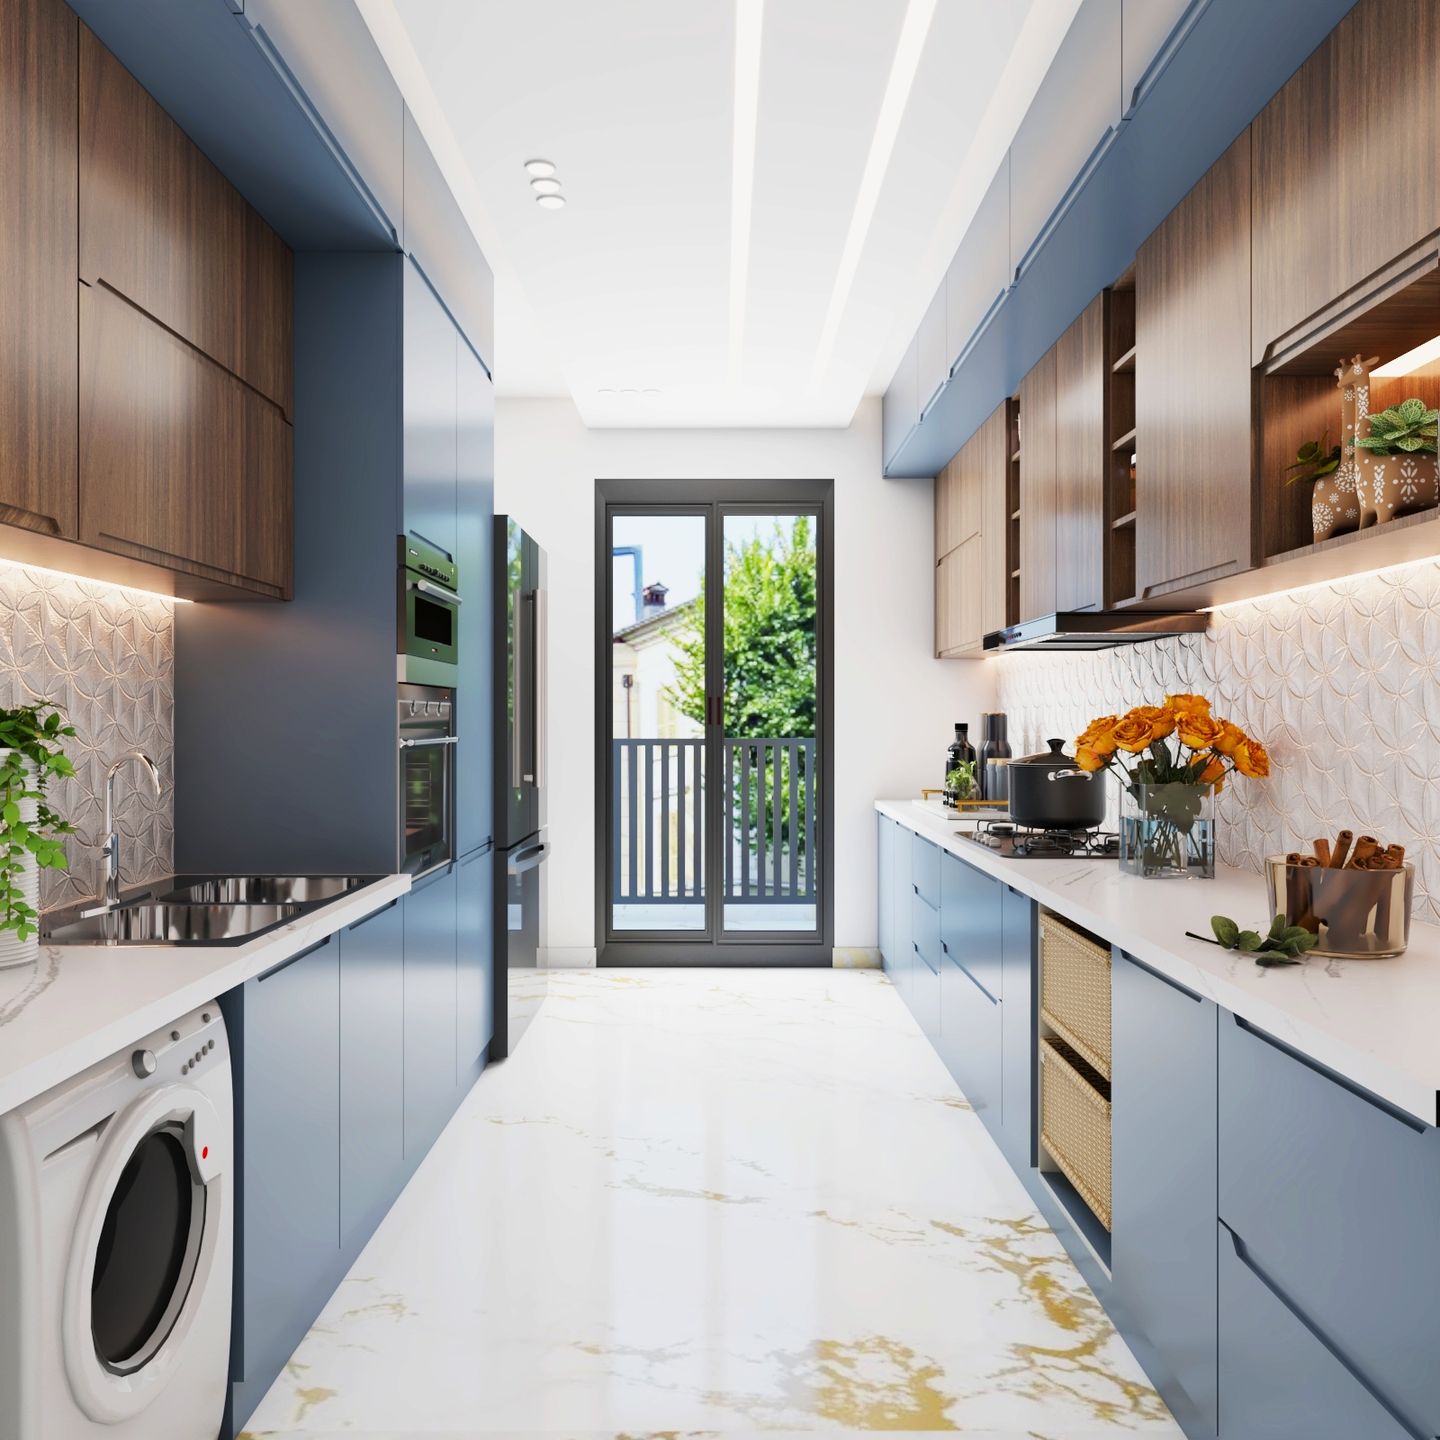 13x9 Ft Light Blue And Wooden Parallel Modular Kitchen Design With Floral Backsplash - Livspace